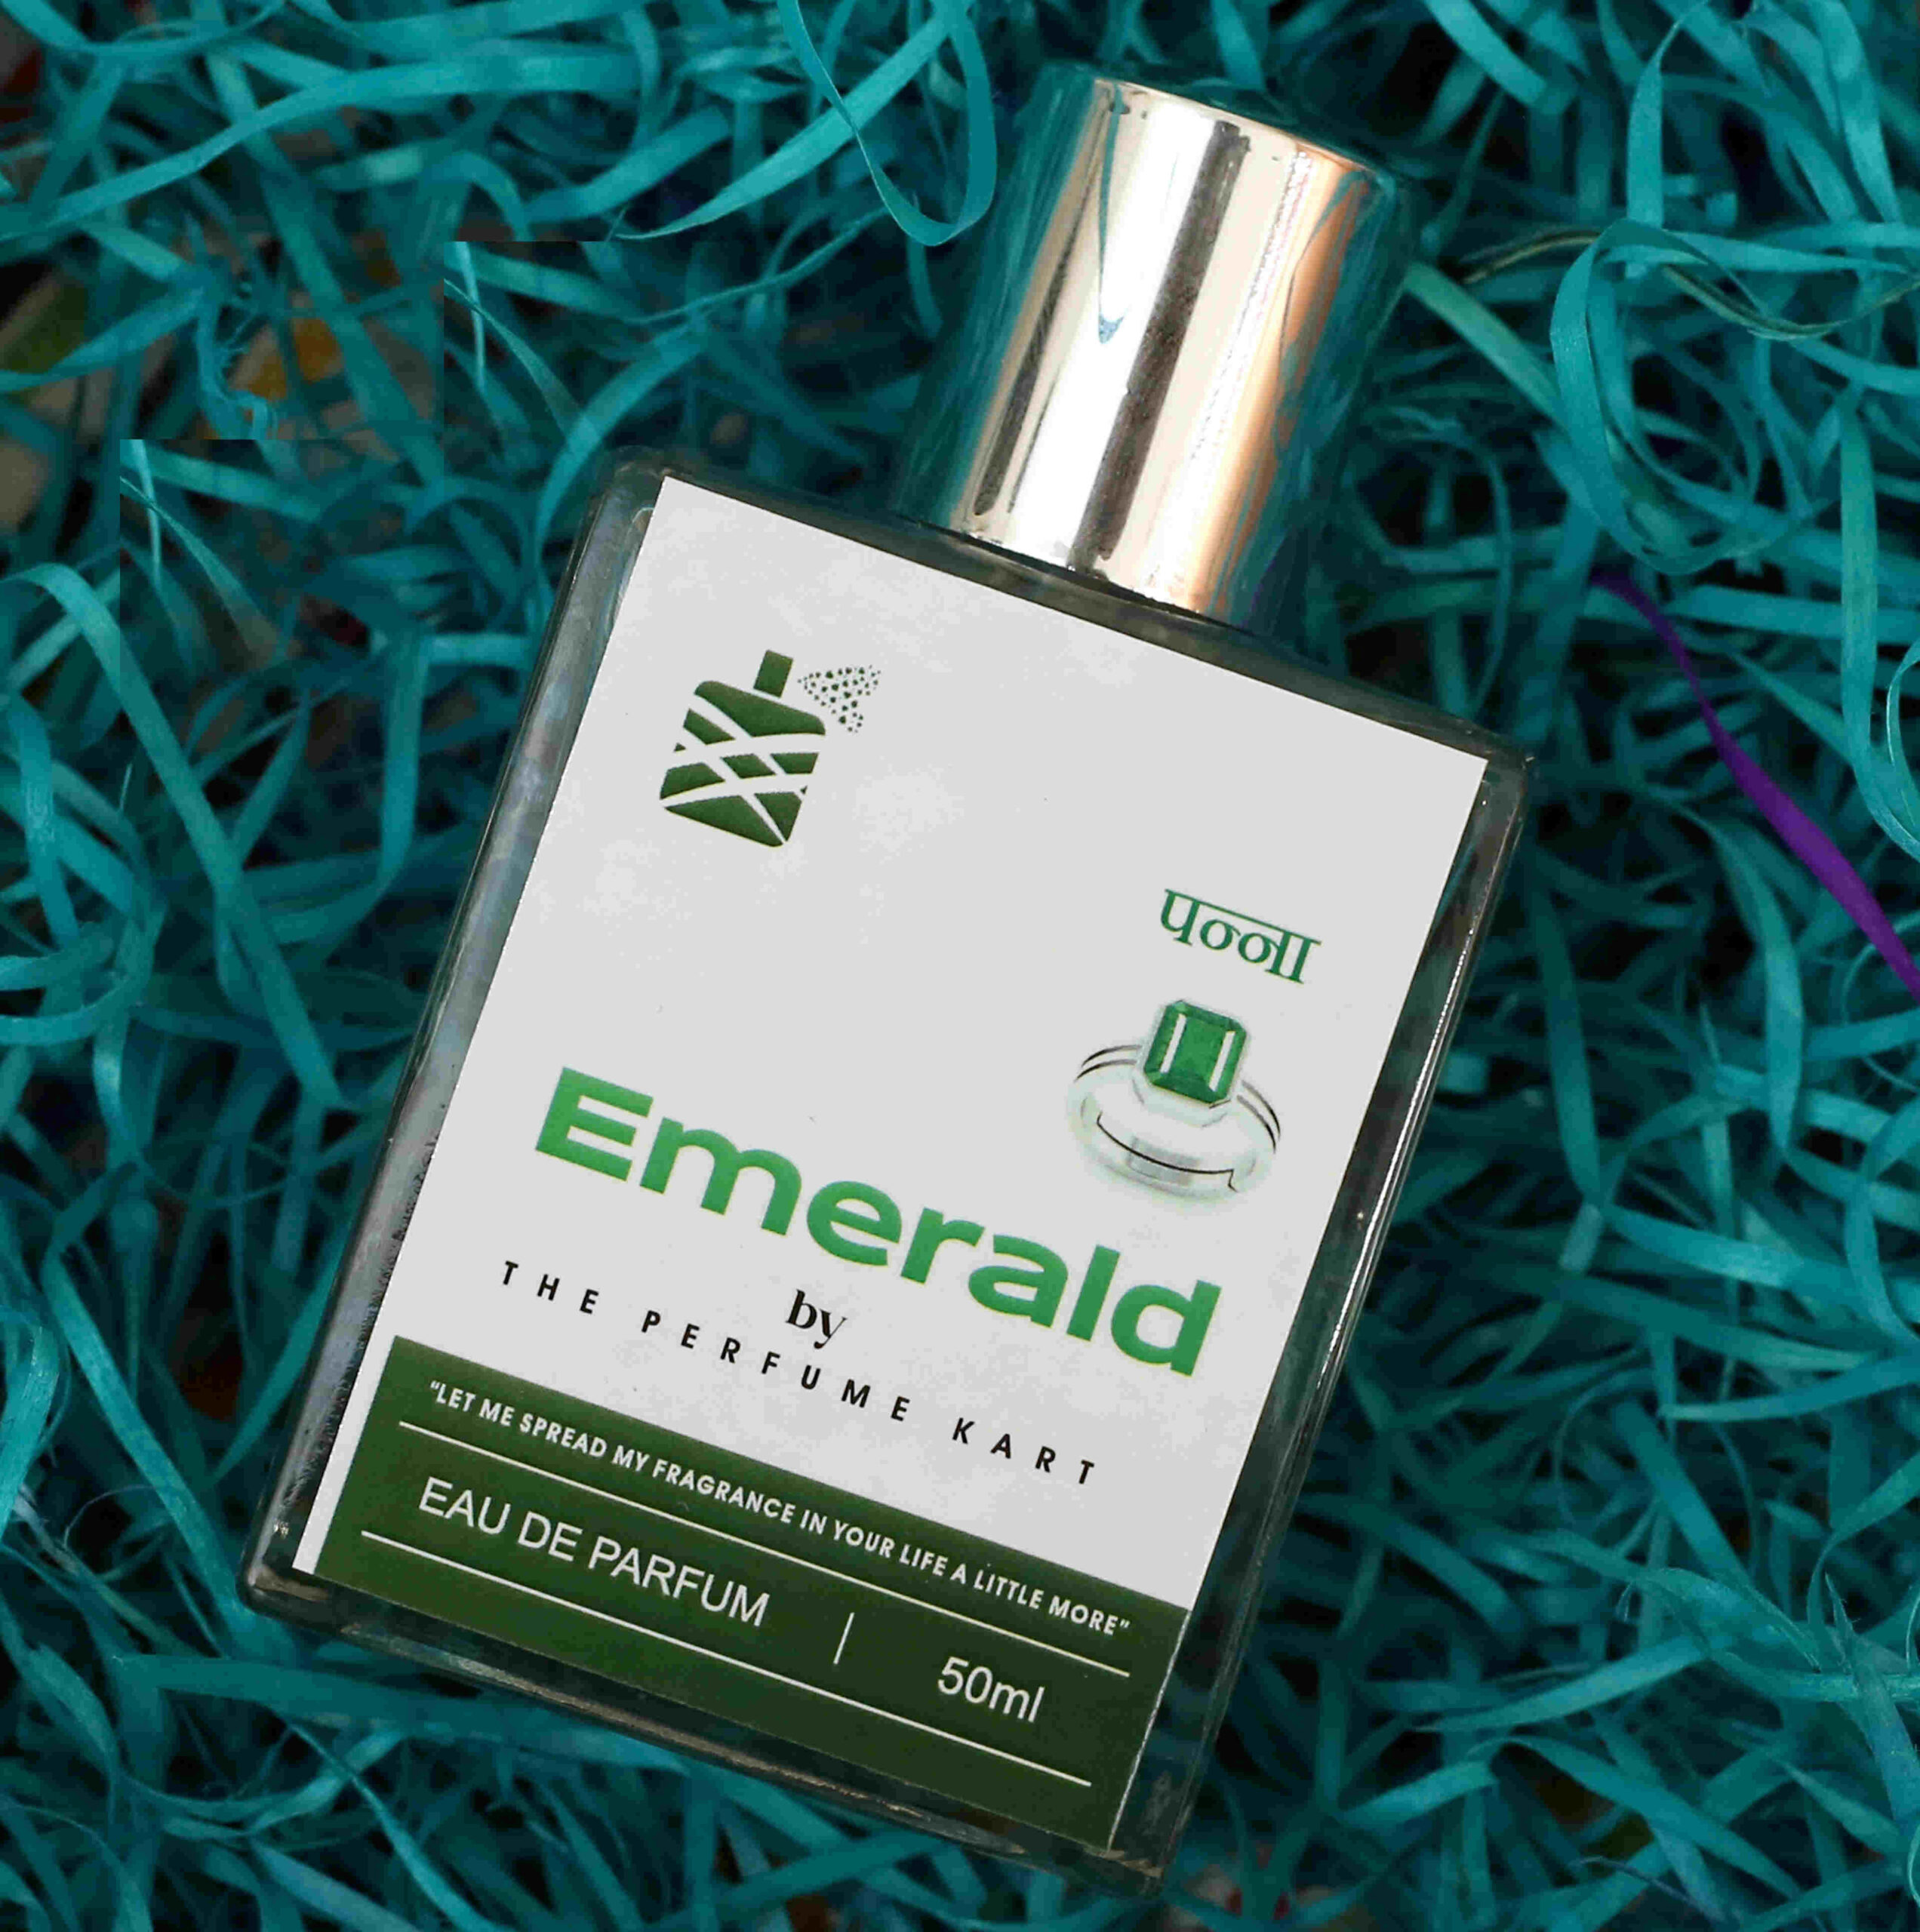 Emerald Perfume , perfume for mercury, perfume for budh, panna perfume